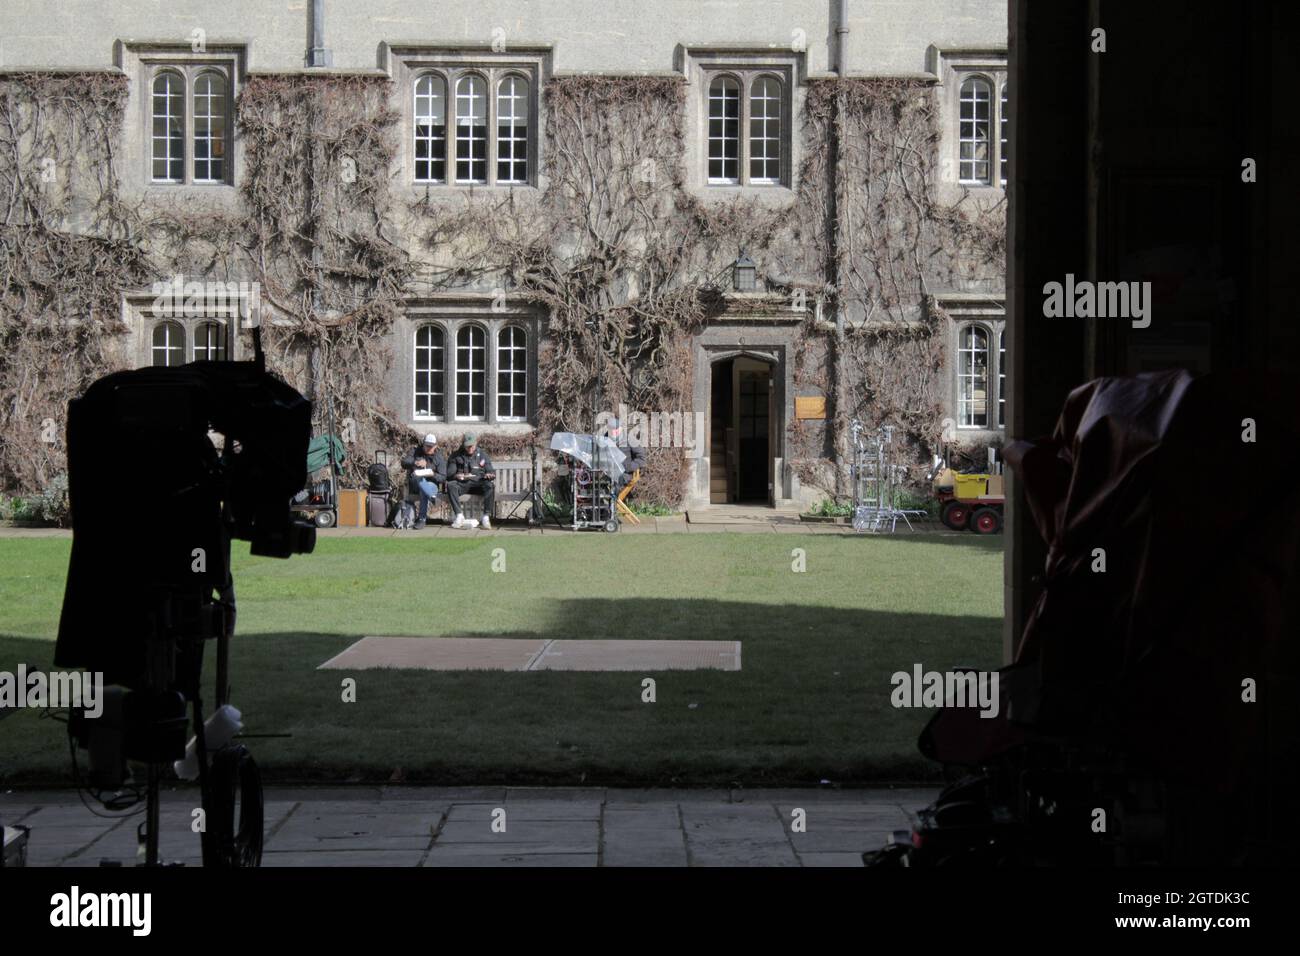 Endeavour TV Series 8 „Striker“-Dreharbeiten in Oxford Sun 14/3/21 Oxford Shaun Evans Schauspiel und Regie ( Kreditbild © Jack Ludlam) Stockfoto